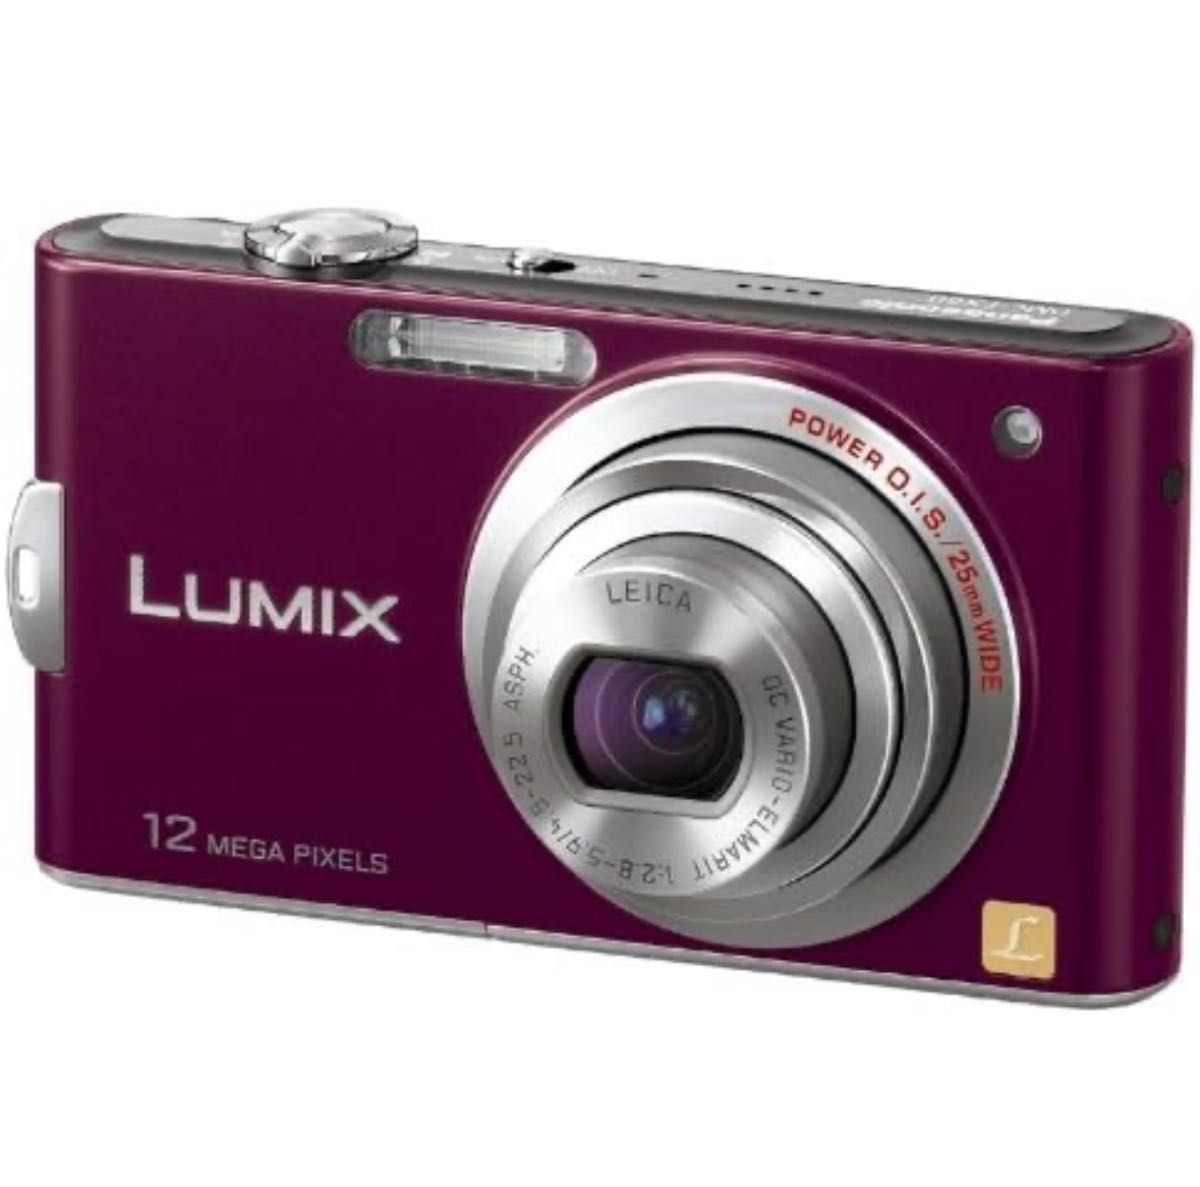 パナソニック デジタルカメラ LUMIX (ルミックス) FX60 ノーブルバイオレット DMC-FX60-V コンパクト 